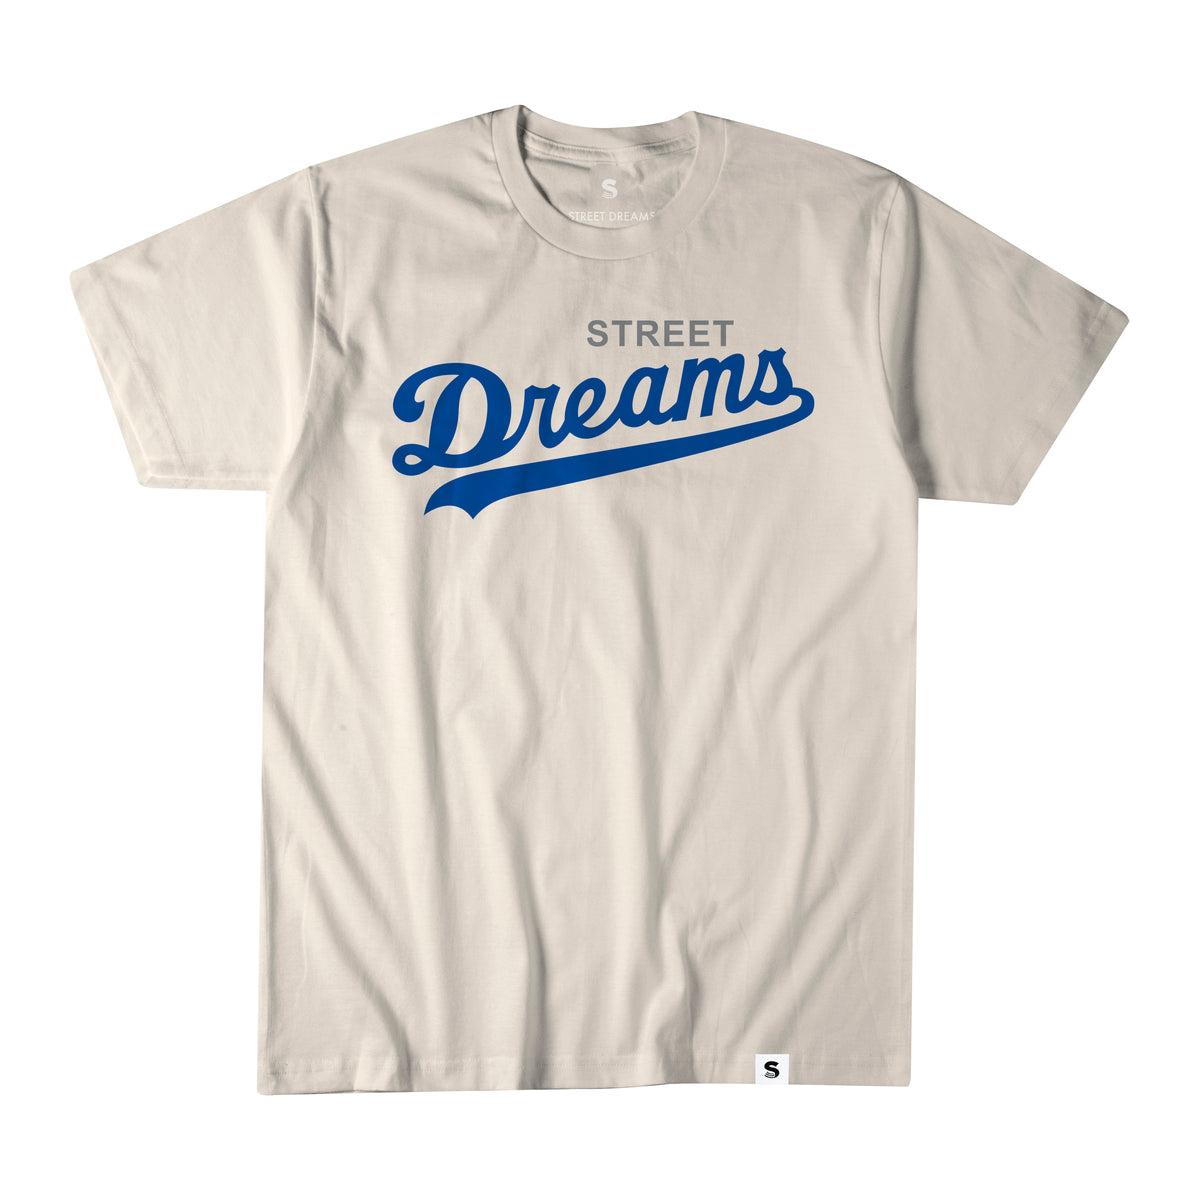 Dreams Street – T-Shirts